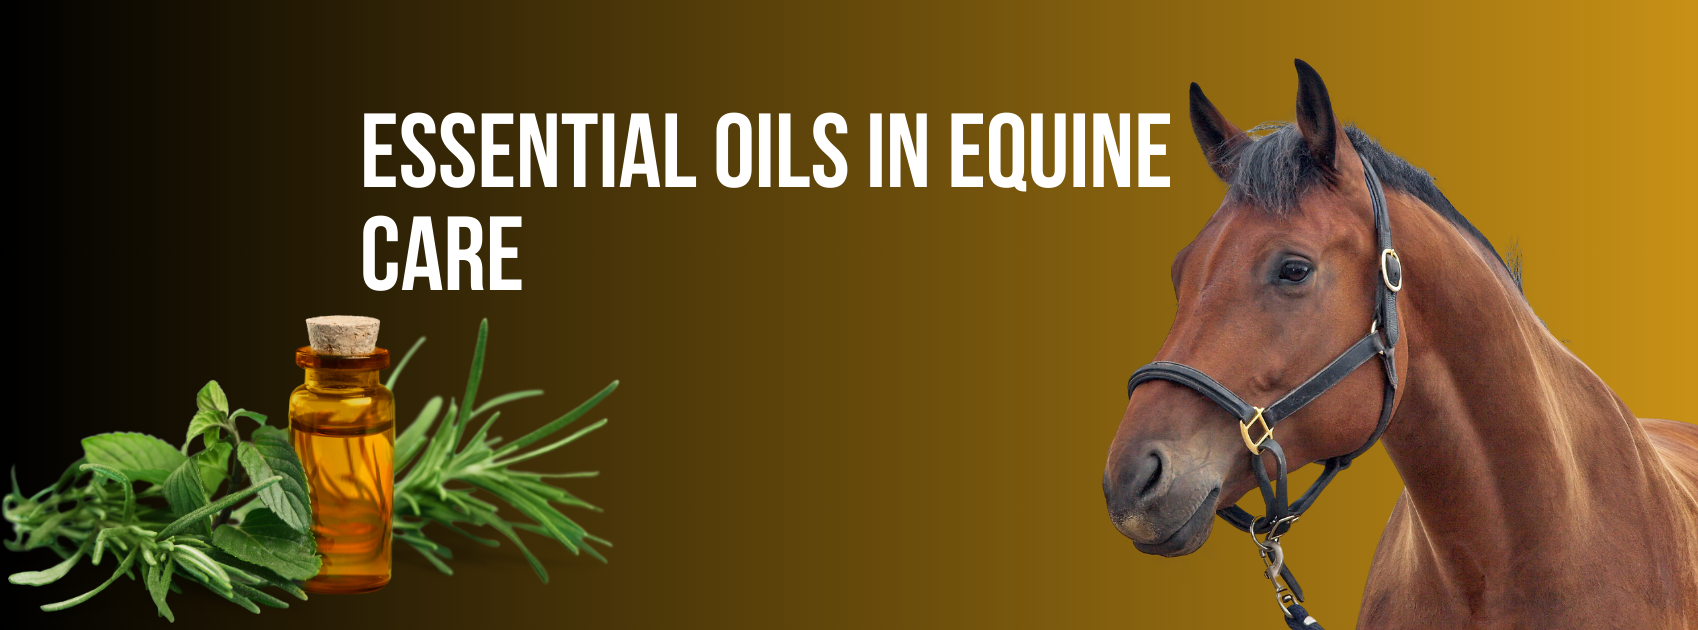 Essential Oils in Equine Care